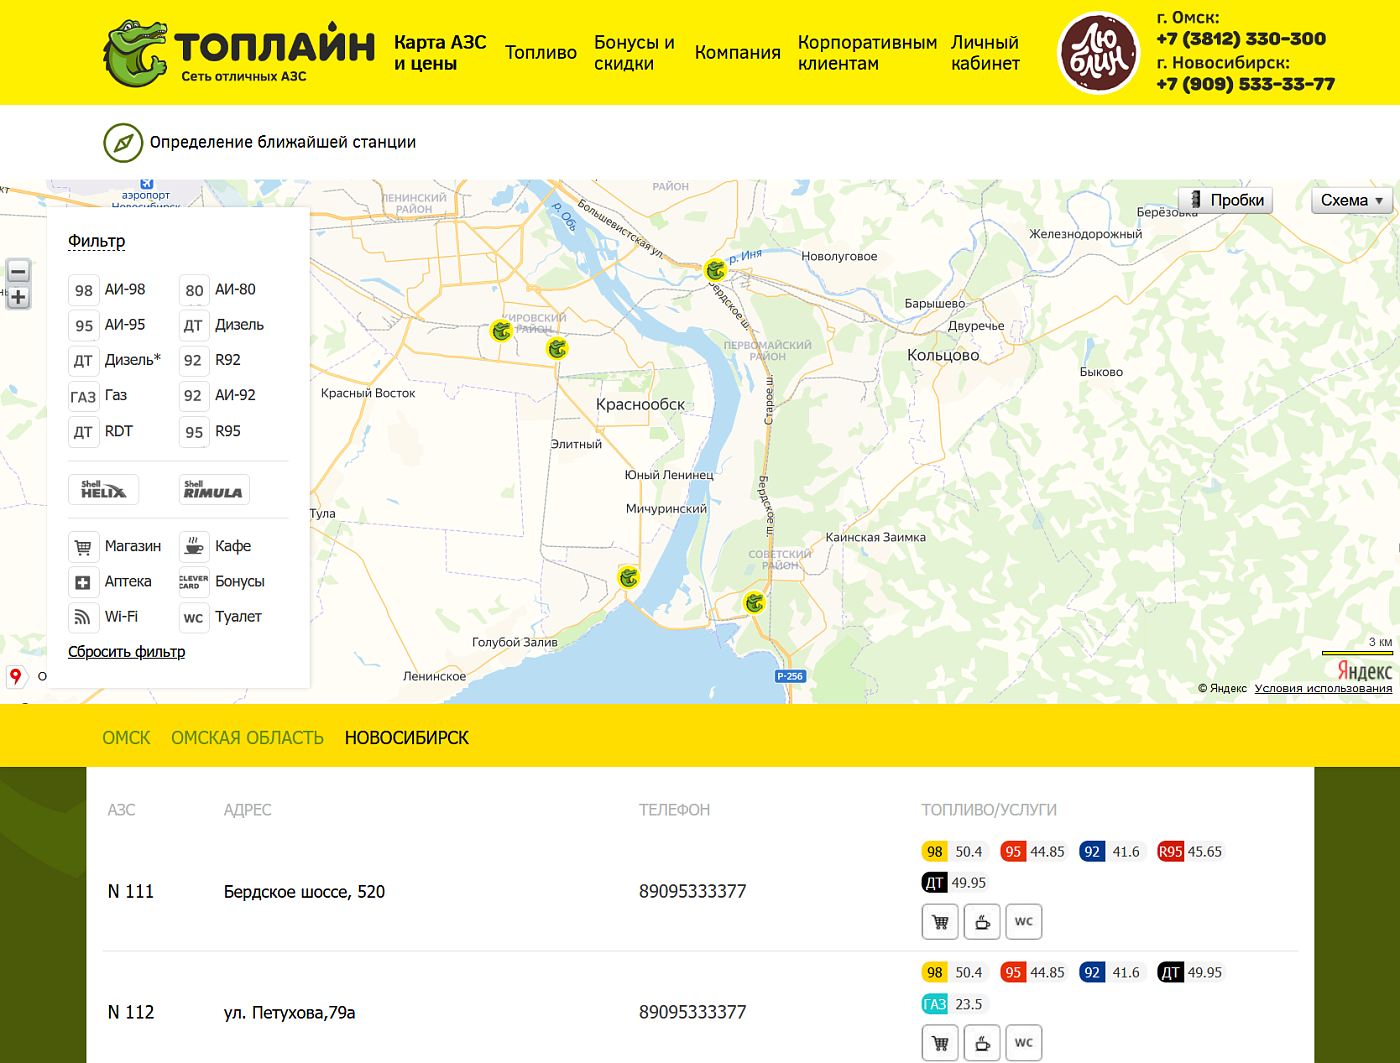 Новое главное меню, добавлена контактная информация в шапке, на карте добавлен город Новосибирск, в котором сеть АЗС открыла новые станции.